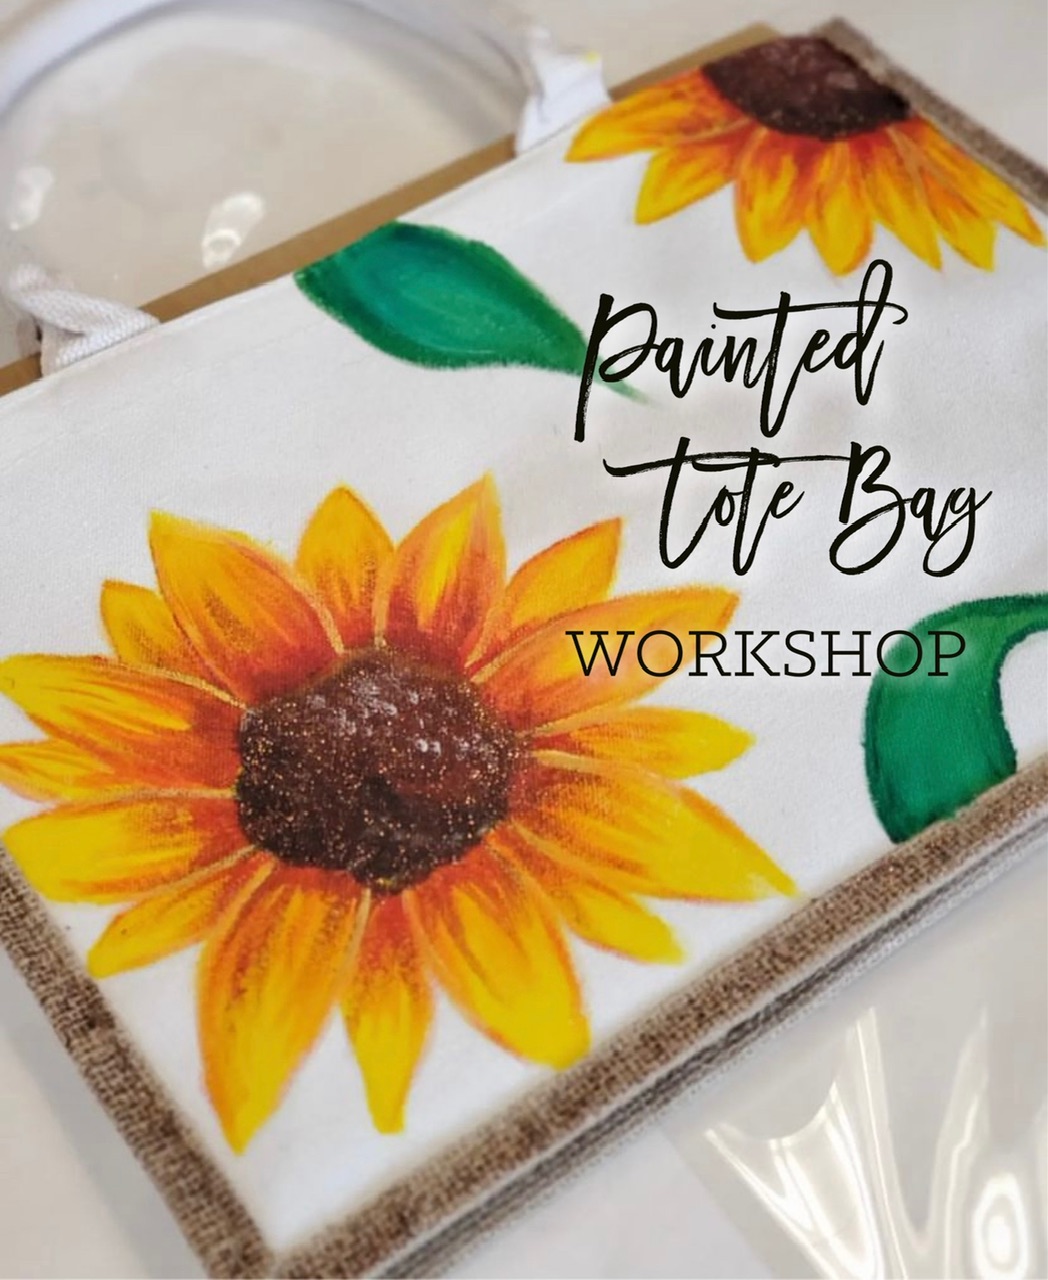 Sunflower Tote Bag Workshop